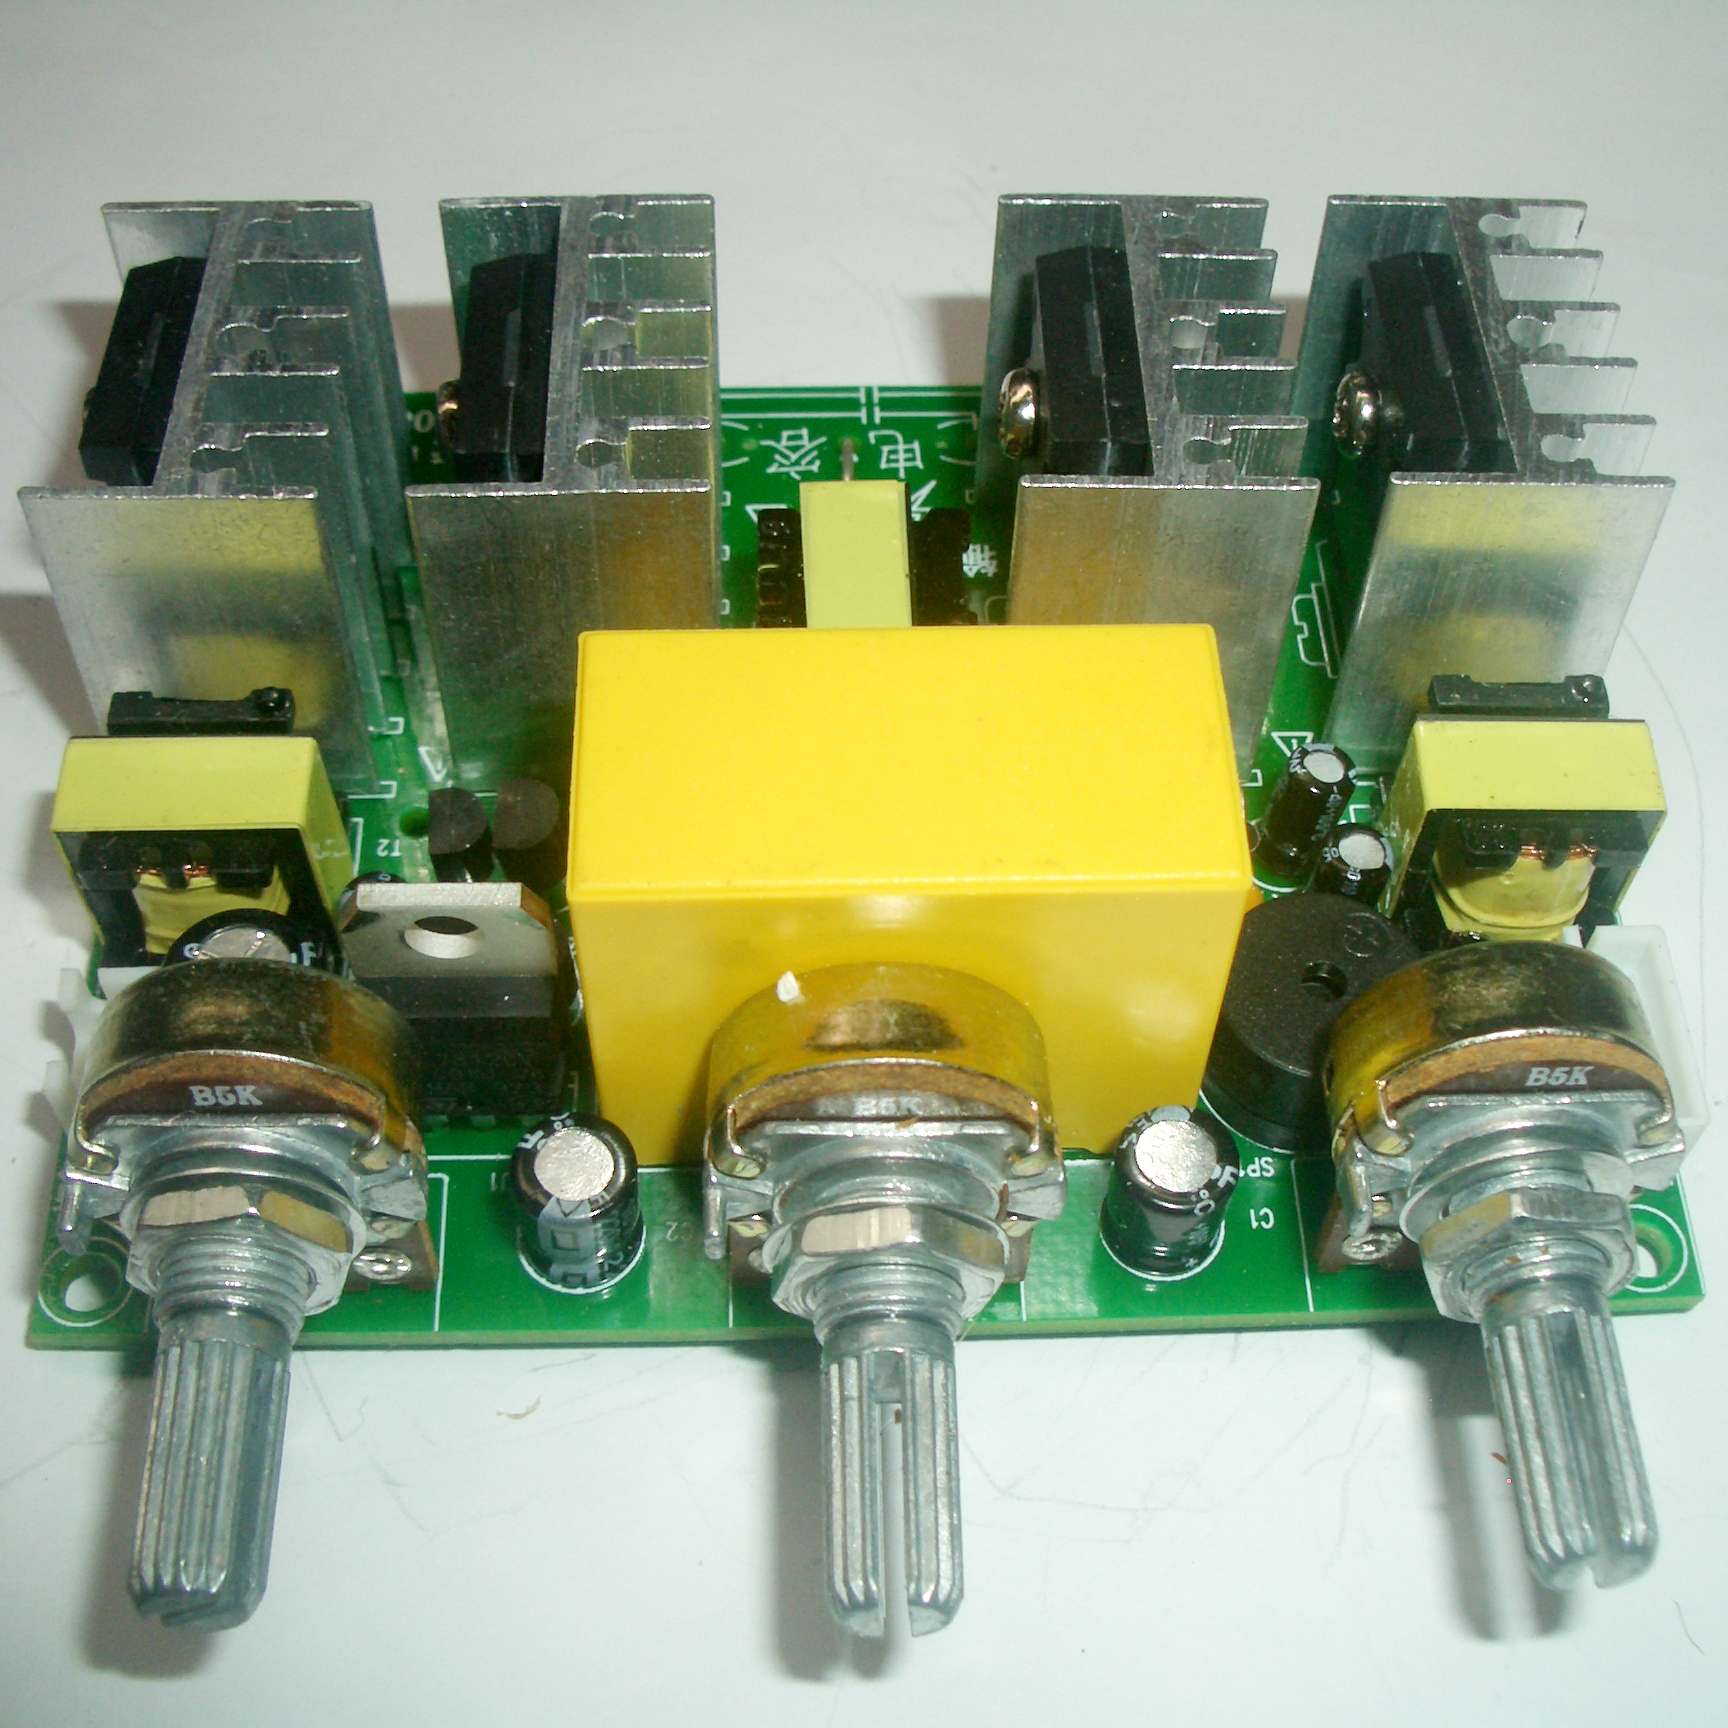 单硅四硅双后级完美切换 单频混频变频3种功能(有图-电源网